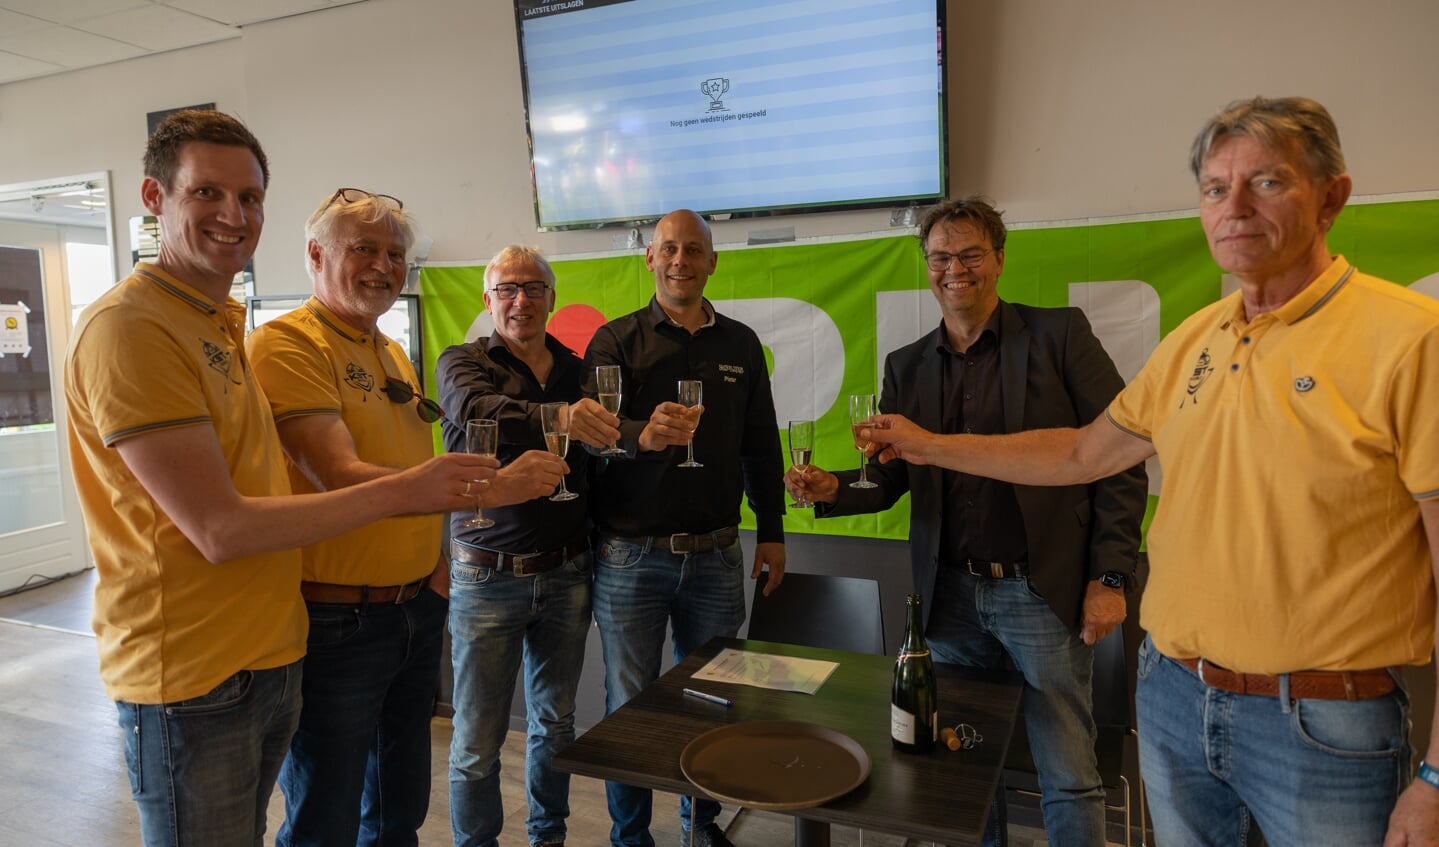 Enkele bestuursleden van VV Ruurlo en het organisatie comité (OC) van het Karel Stegeman Toernooi proosten samen met Pieter Stam (derde van rechts) op het sponsorcontract. Foto: Blacktax 